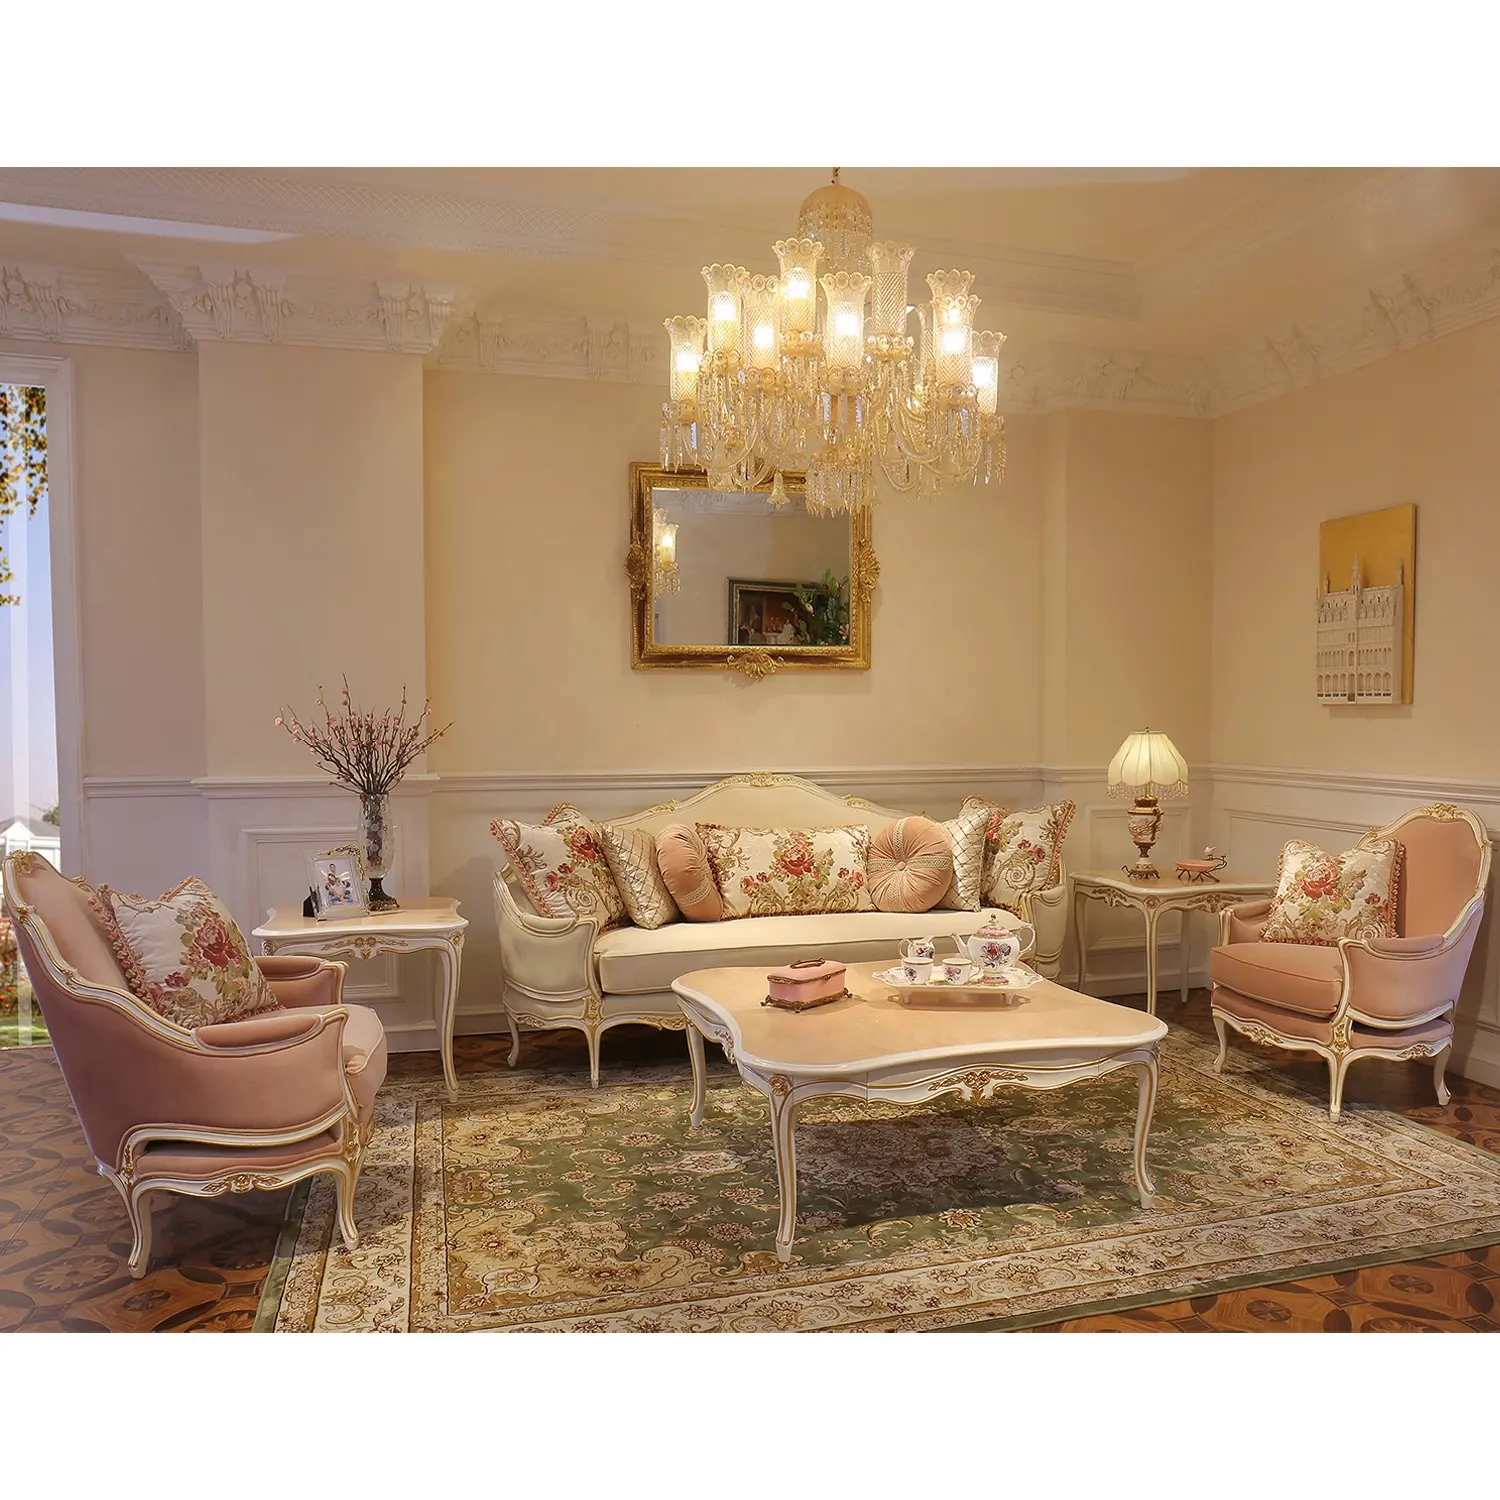 Italienisches Design Luxus traditionelle antike Schnitt Holz Wohnzimmer Möbel Sofa Set